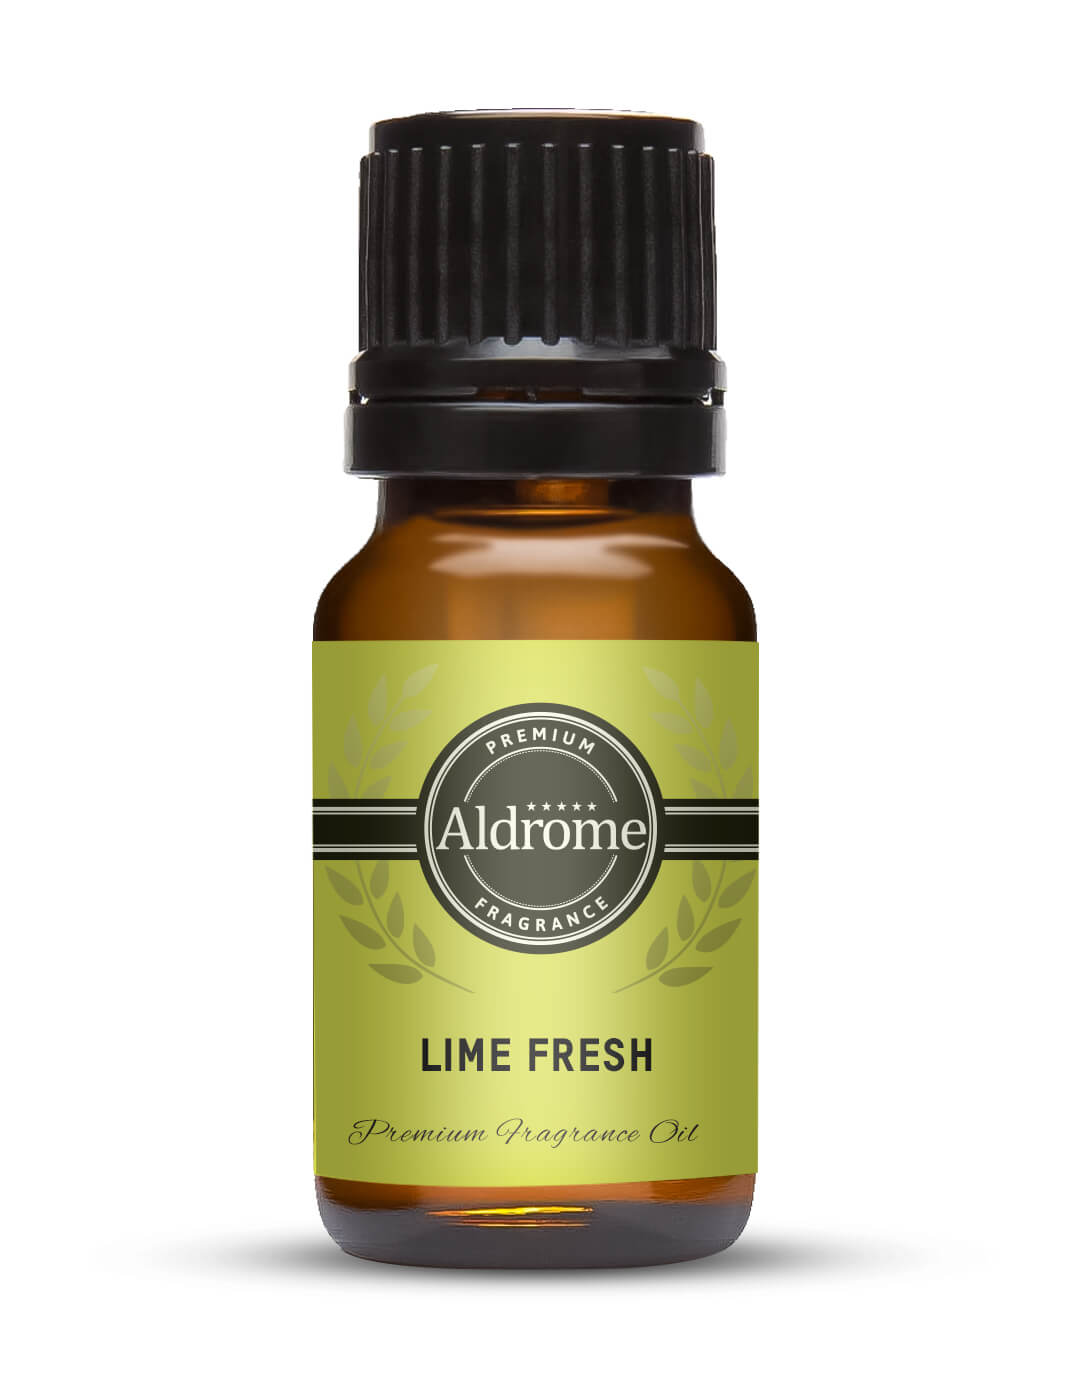 Lime Fresh Fragrance Oil - 10ml | Buy Lime Fresh Fragrance Oil | Aldrome Premium Fragrance Oil